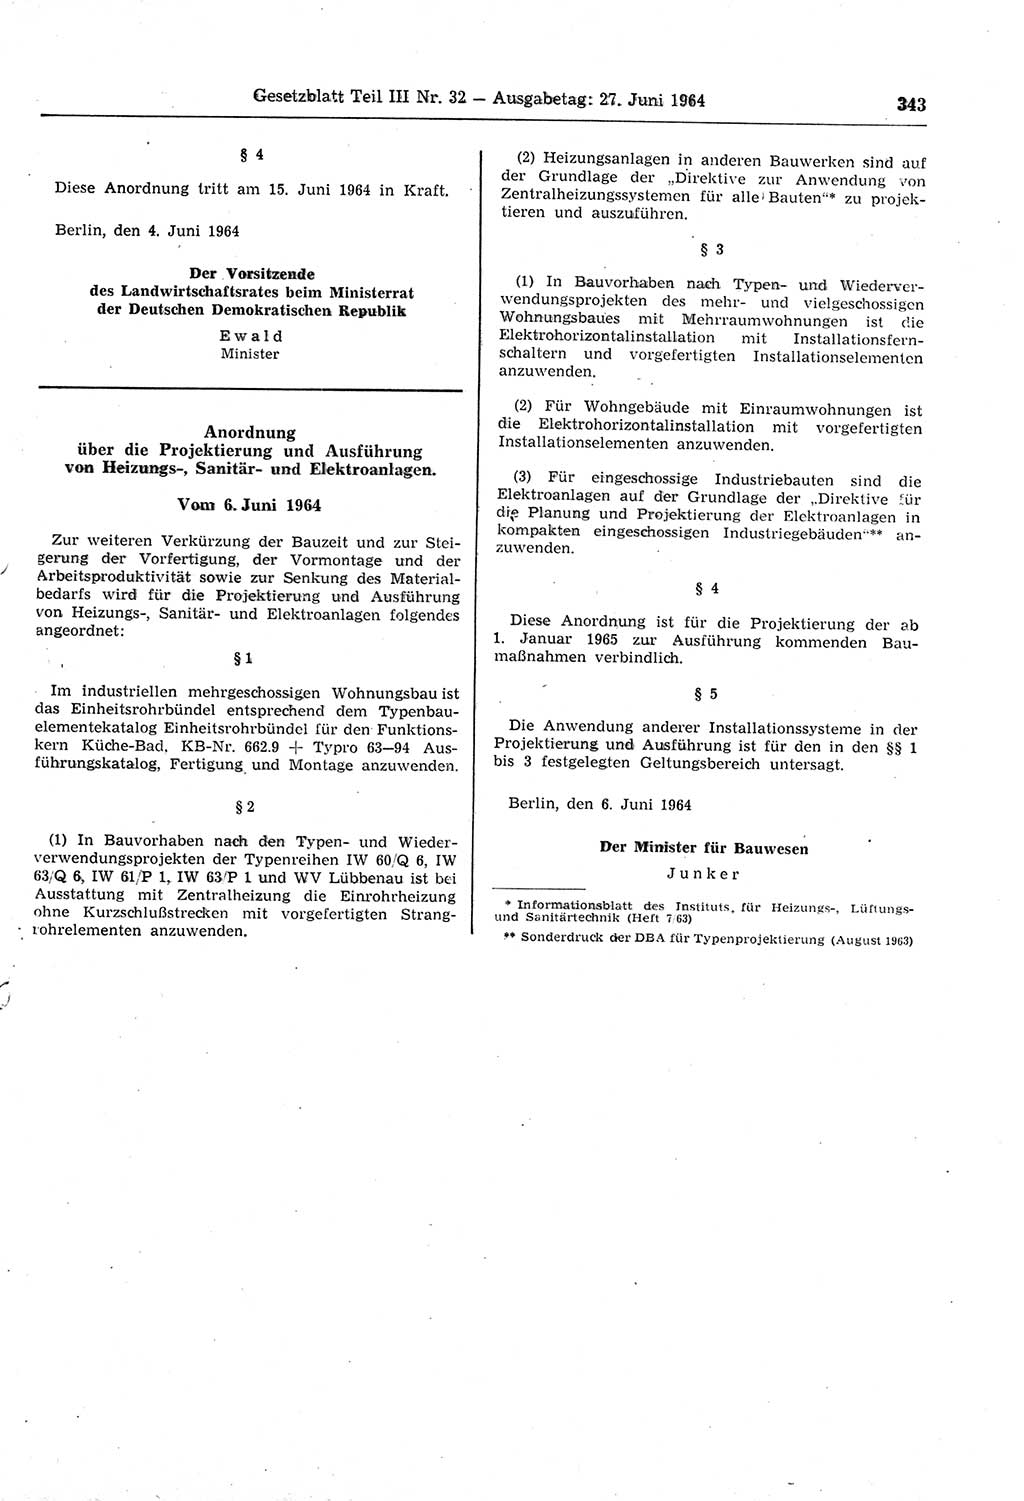 Gesetzblatt (GBl.) der Deutschen Demokratischen Republik (DDR) Teil ⅠⅠⅠ 1964, Seite 343 (GBl. DDR ⅠⅠⅠ 1964, S. 343)